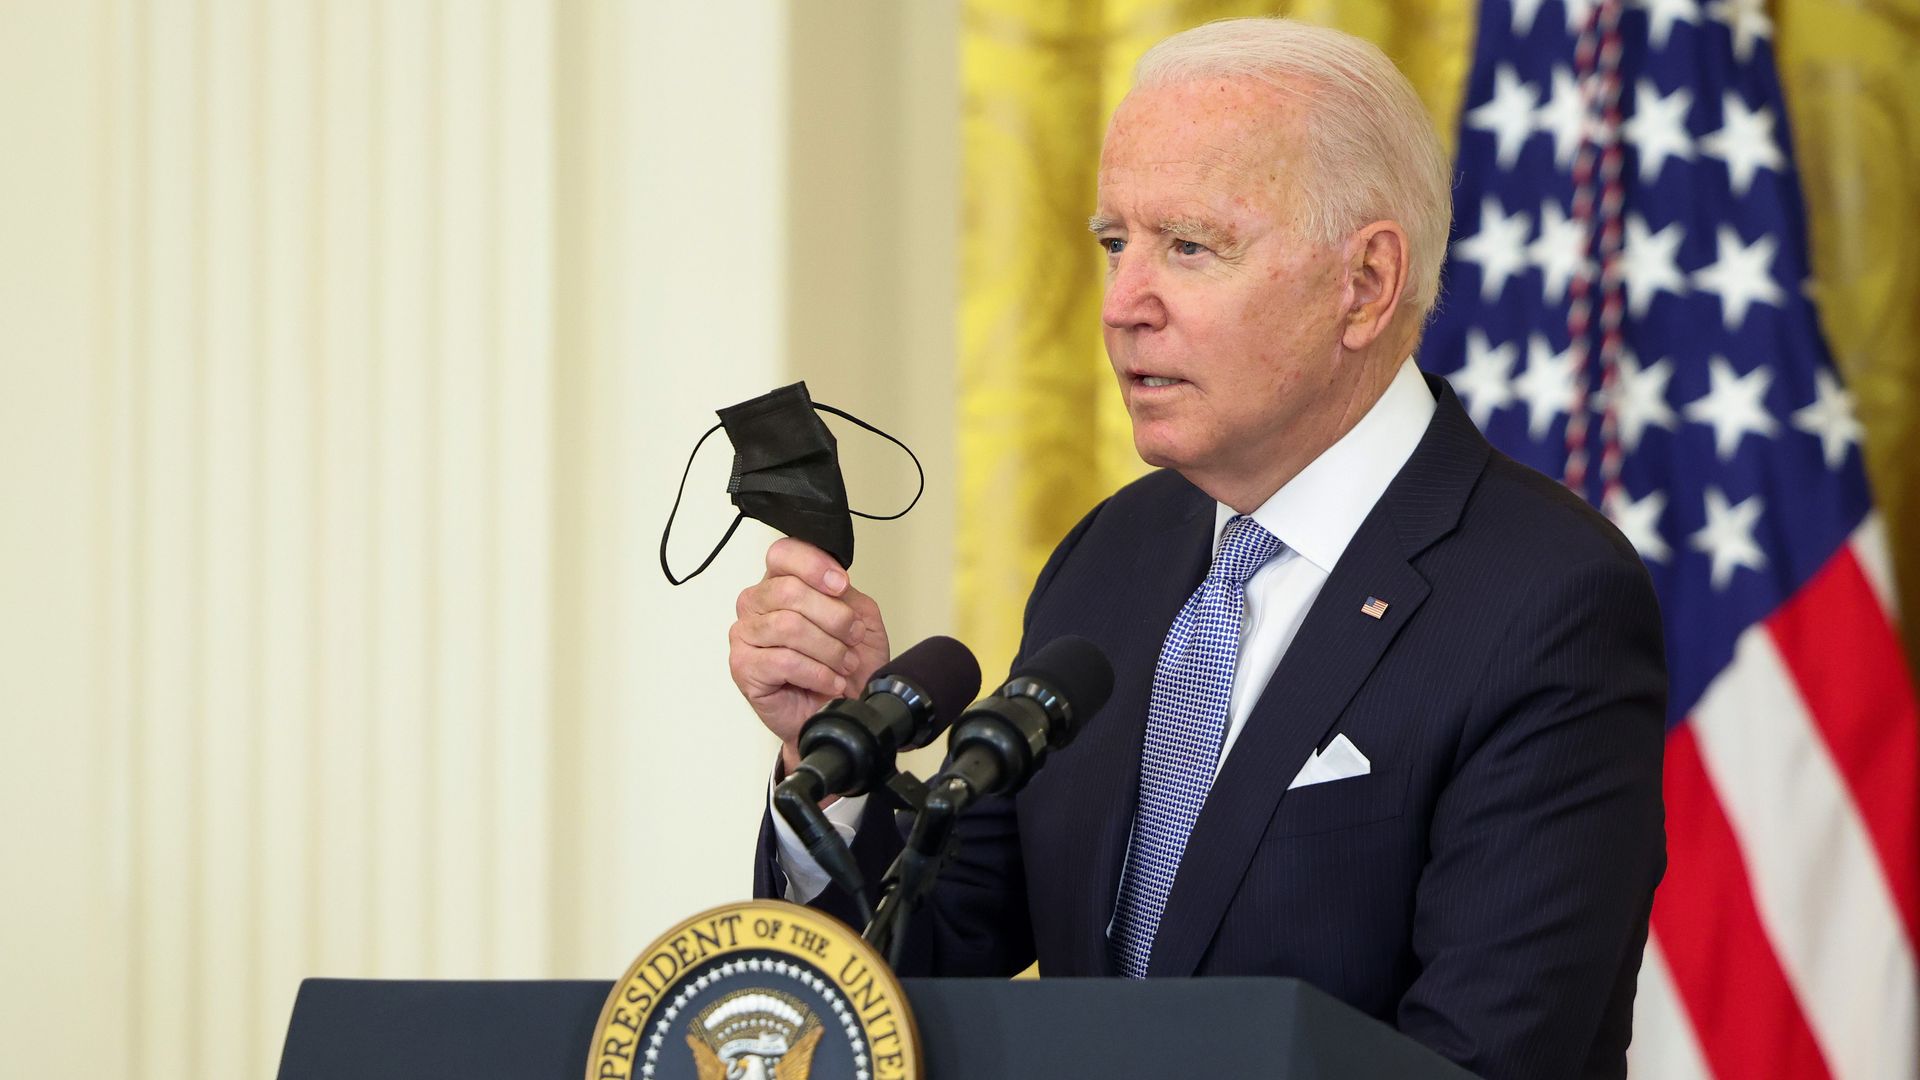 President Biden is seen waving a mask last week.